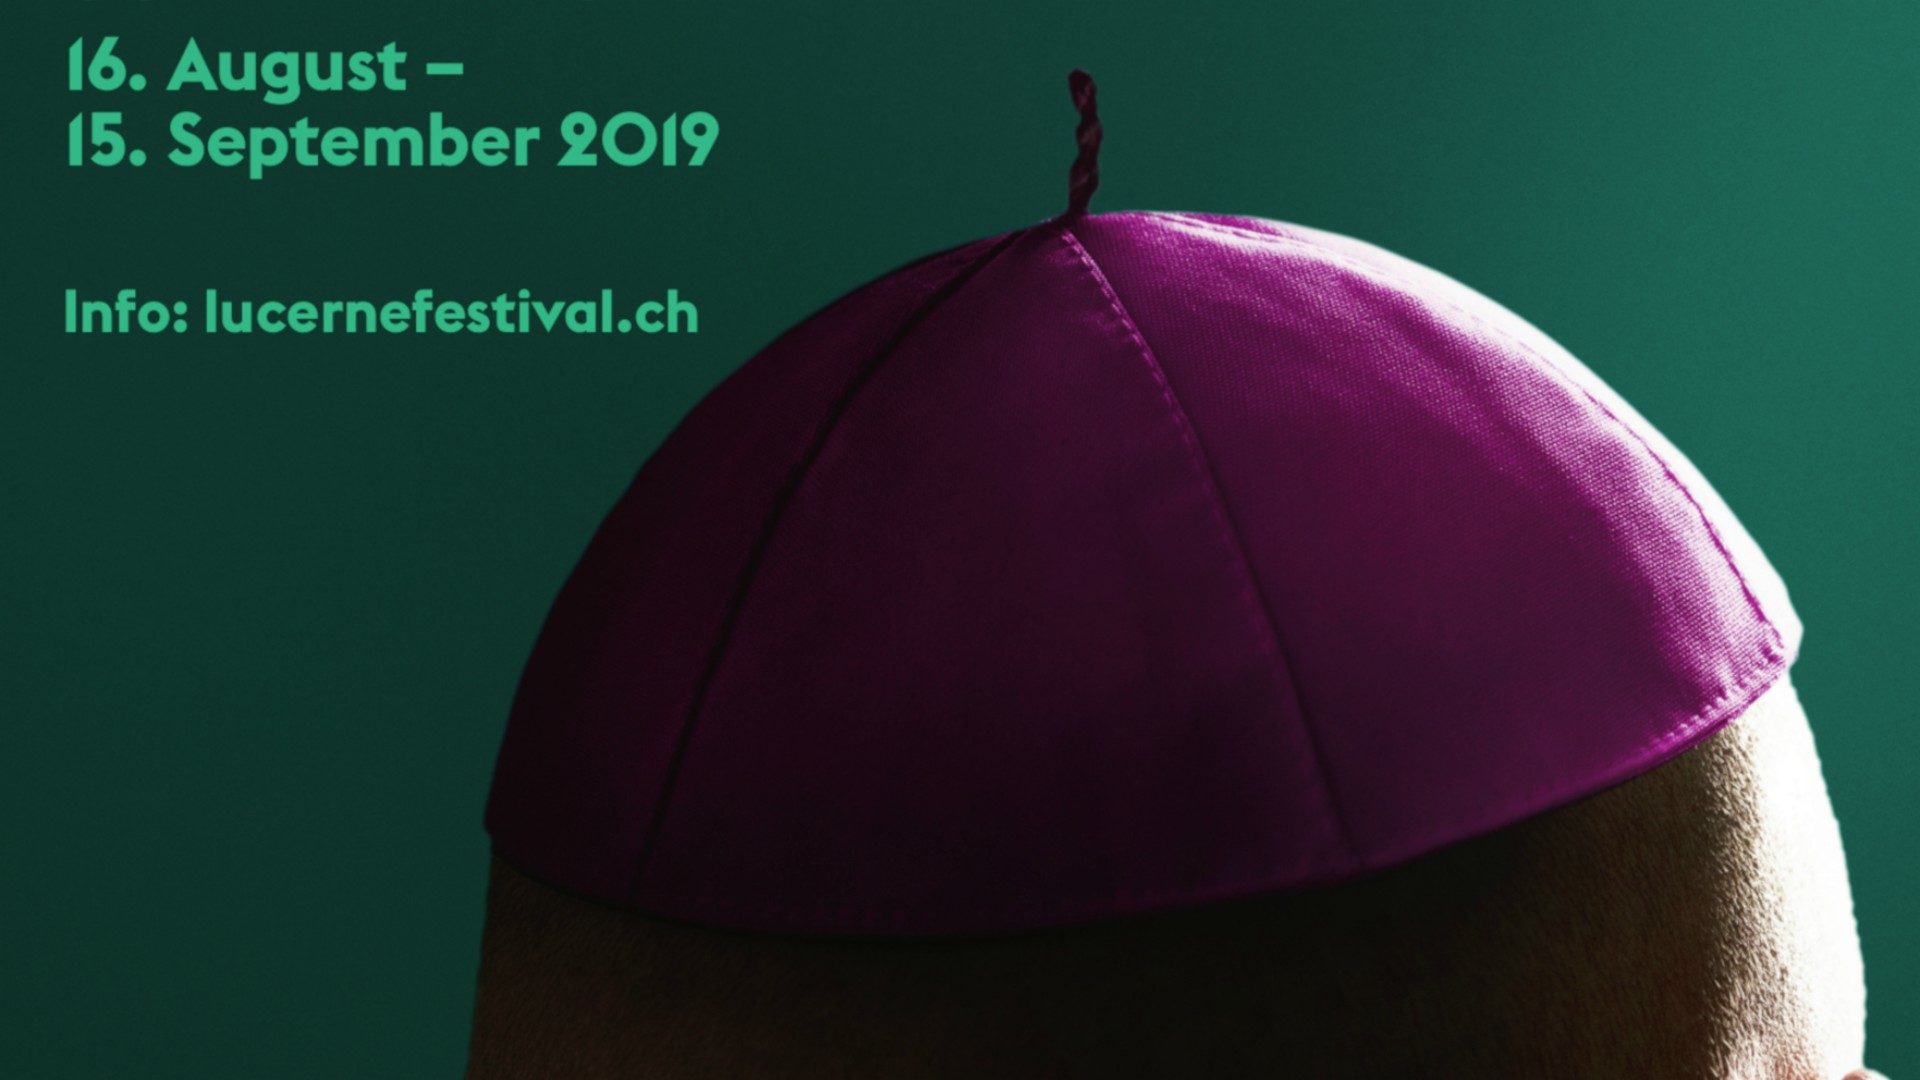 Le Festival de musique de Lucerne affiche une calotte d'évêque (lucernefestival.ch)